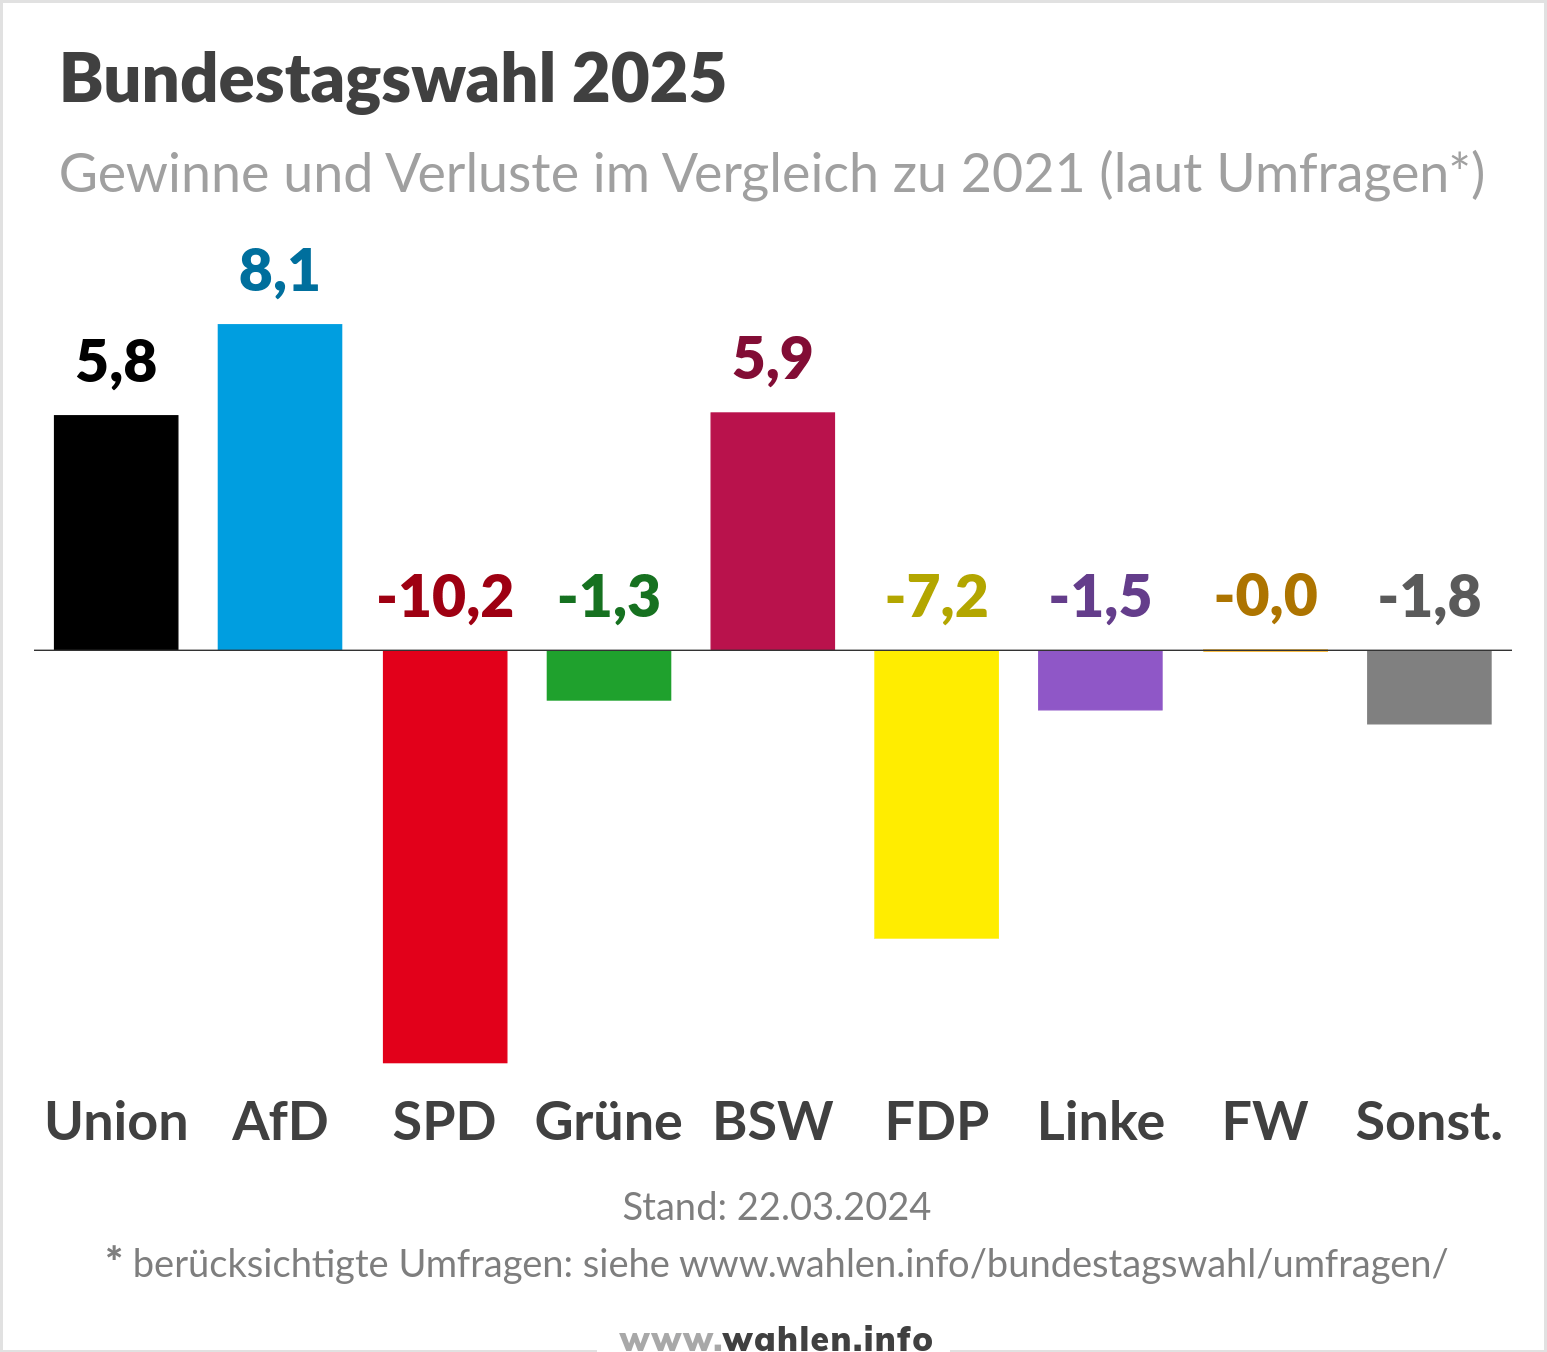 Bundestagswahl 2025 - Umfragen (Prognosen, mit BSW und FW)